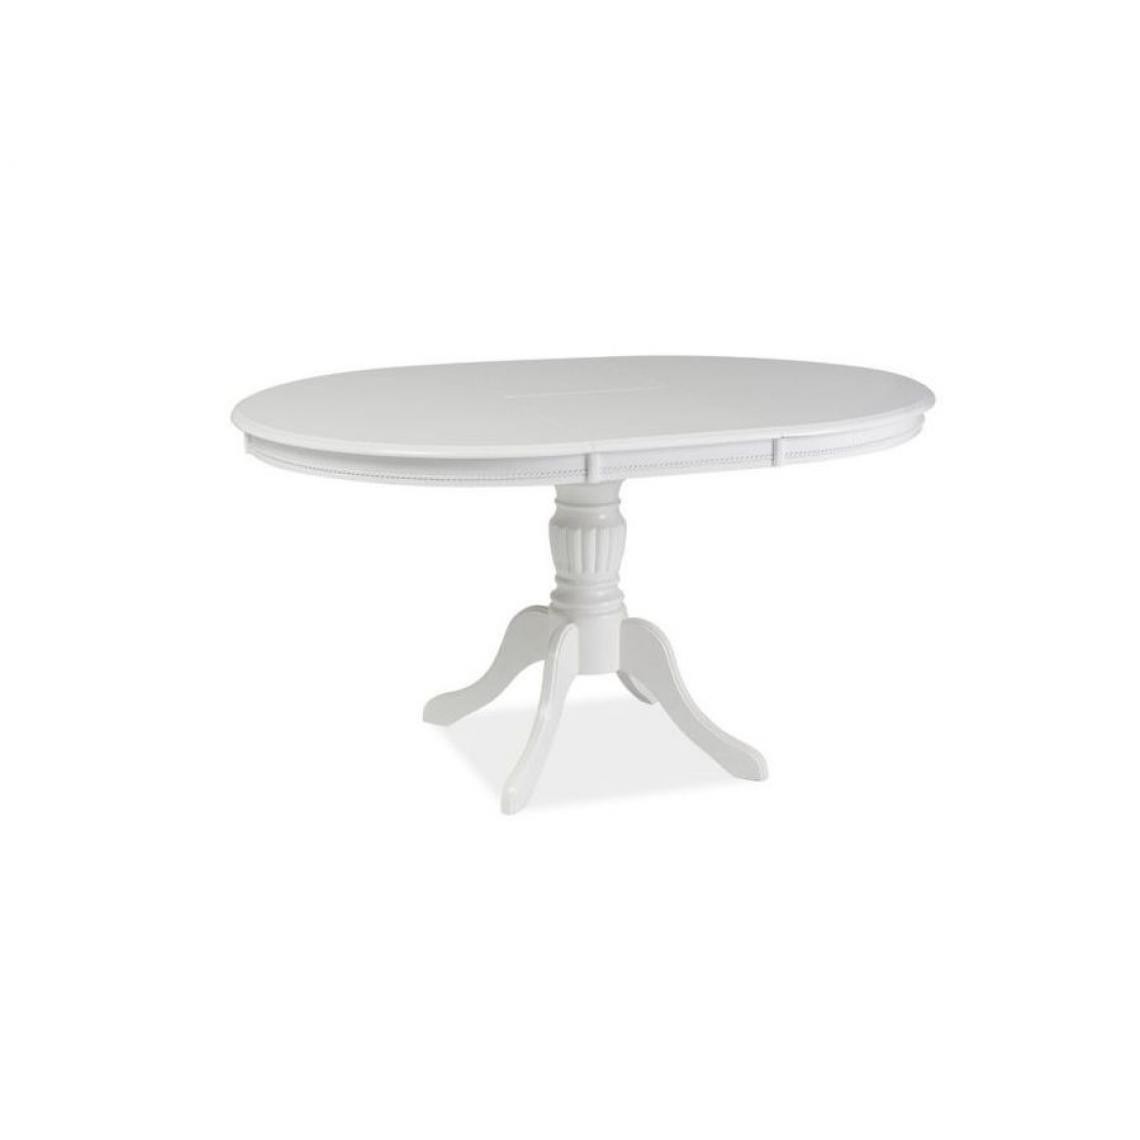 Hucoco - OLIMIA - Table élégante pour la salle à manger - 106x106x76 cm - Plateau ovale - Piètement en bois - Extensible - Blanc - Tables à manger